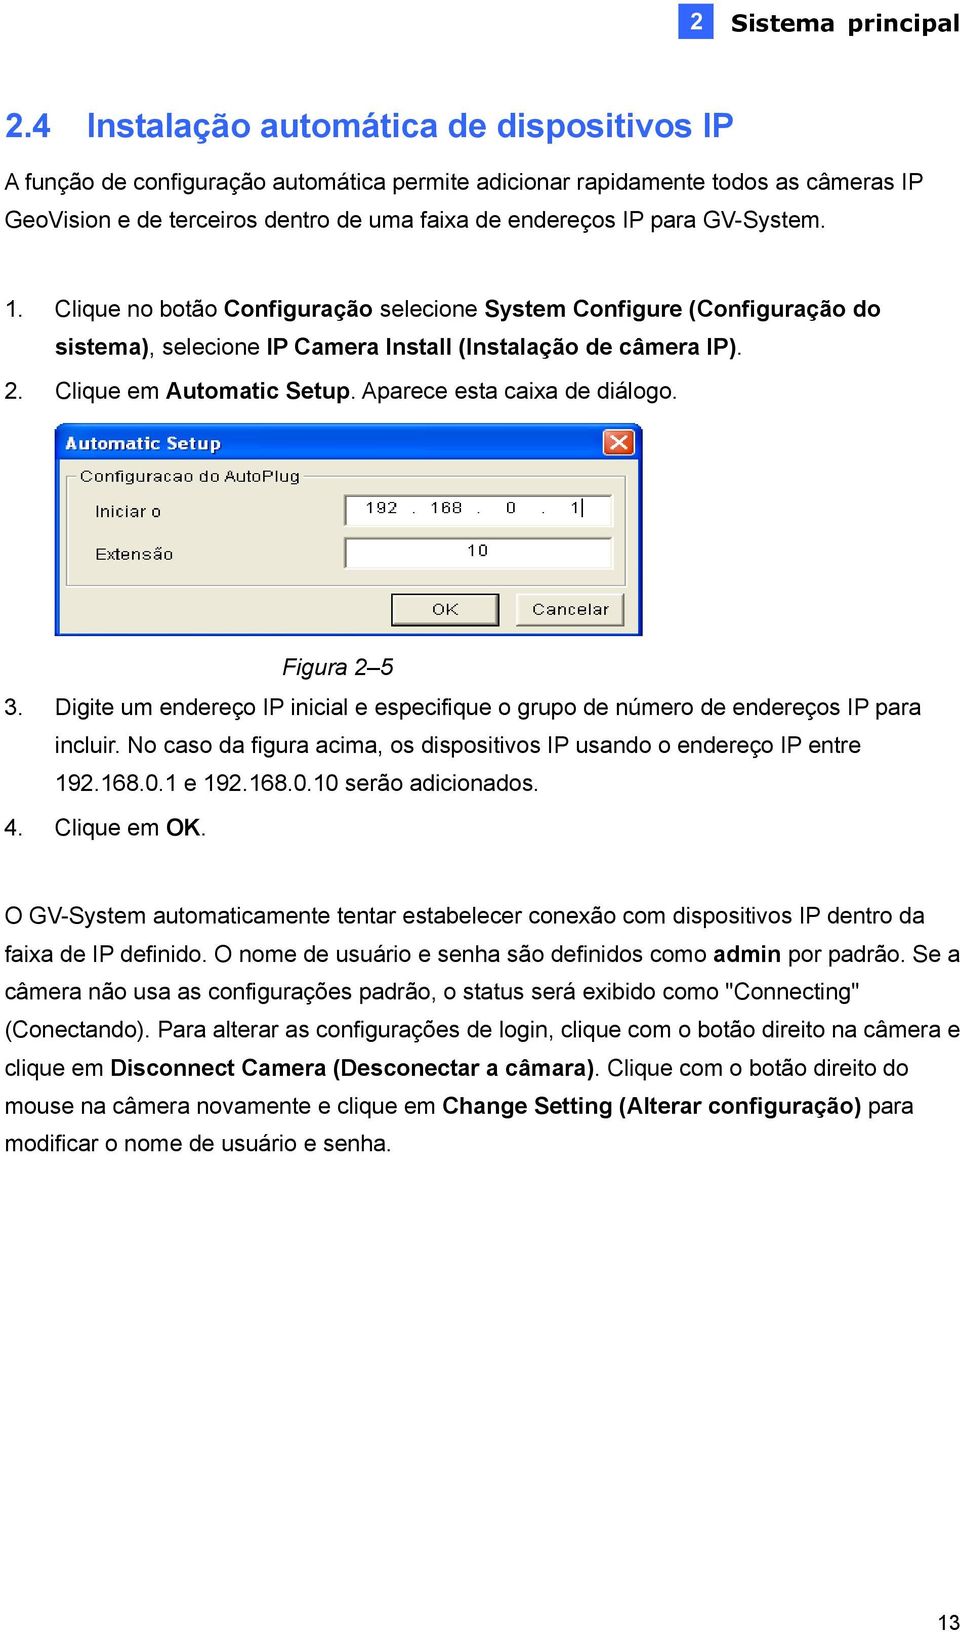 GV-System. 1. Clique no botão Configuração selecione System Configure (Configuração do sistema), selecione IP Camera Install (Instalação de câmera IP). 2. Clique em Automatic Setup.